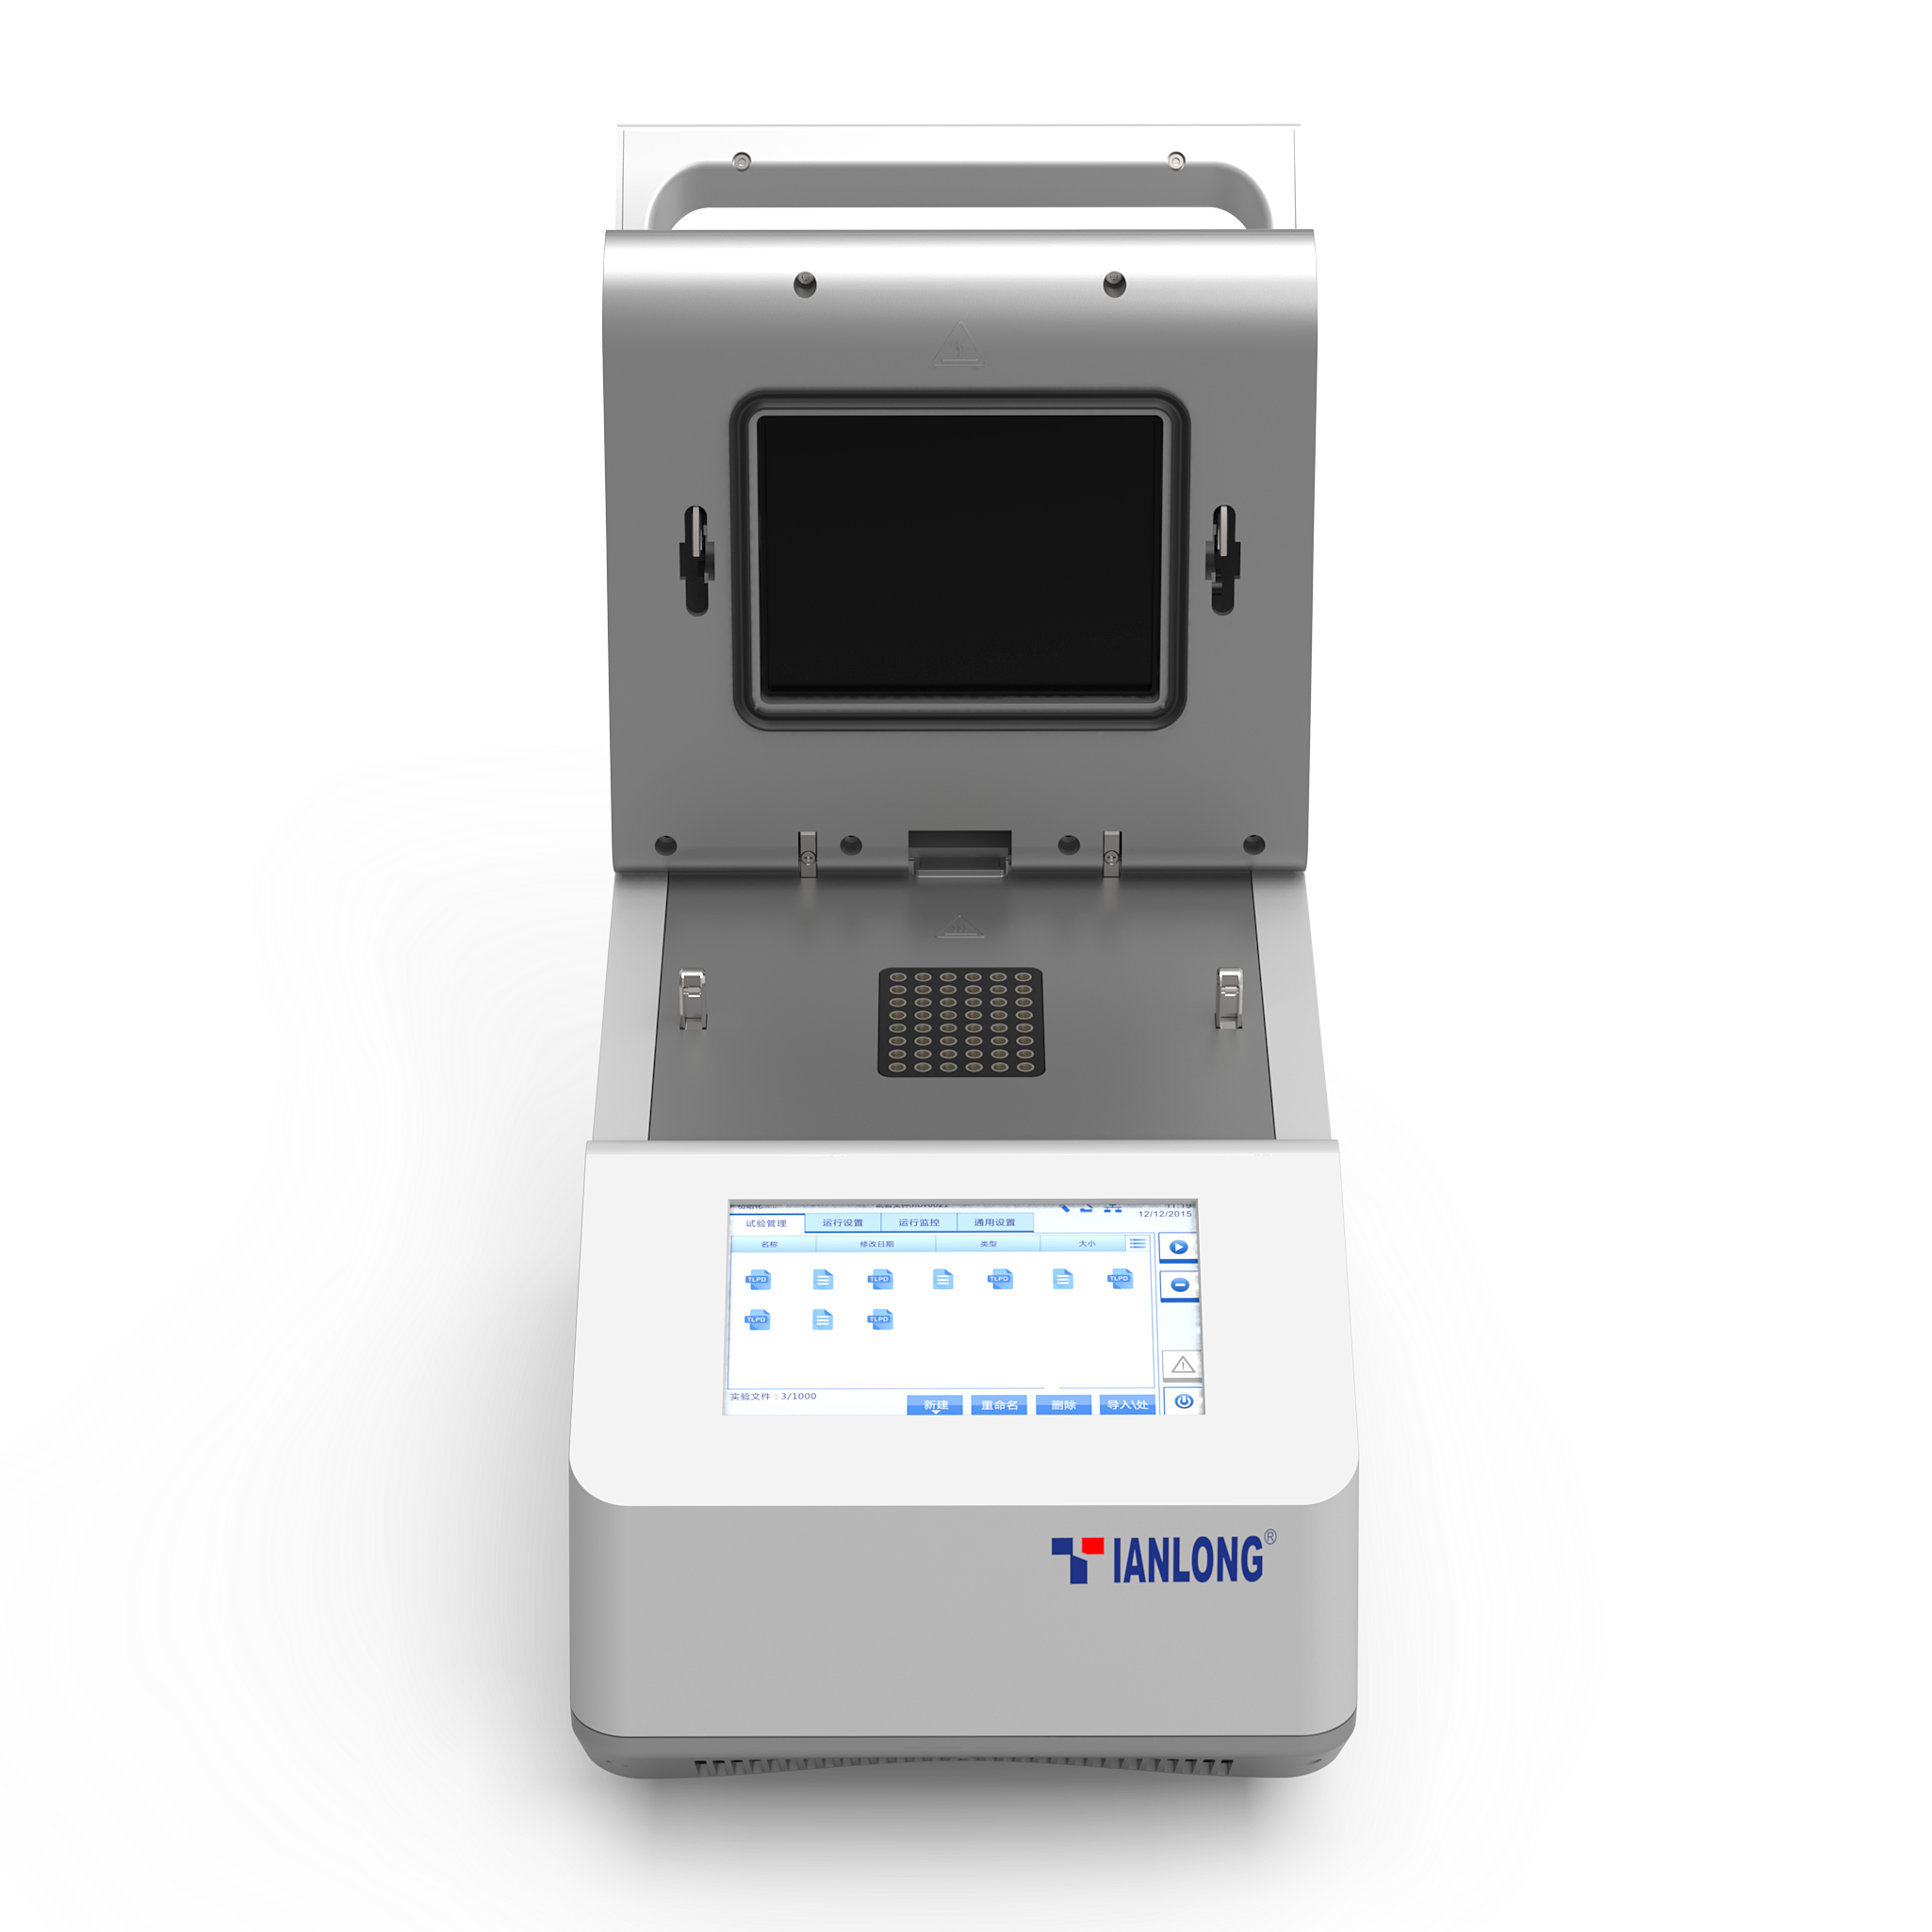 دستگاه ریل تایم پی سی آر - جنتایر 48 ای	 - Real-time PCR Systems - Gentier 48E	 - Xi’an Tianlong Science & Technology CO.,LTD	 - دستگاه - سلولی و مولکولی - وستا تجهیز پارت